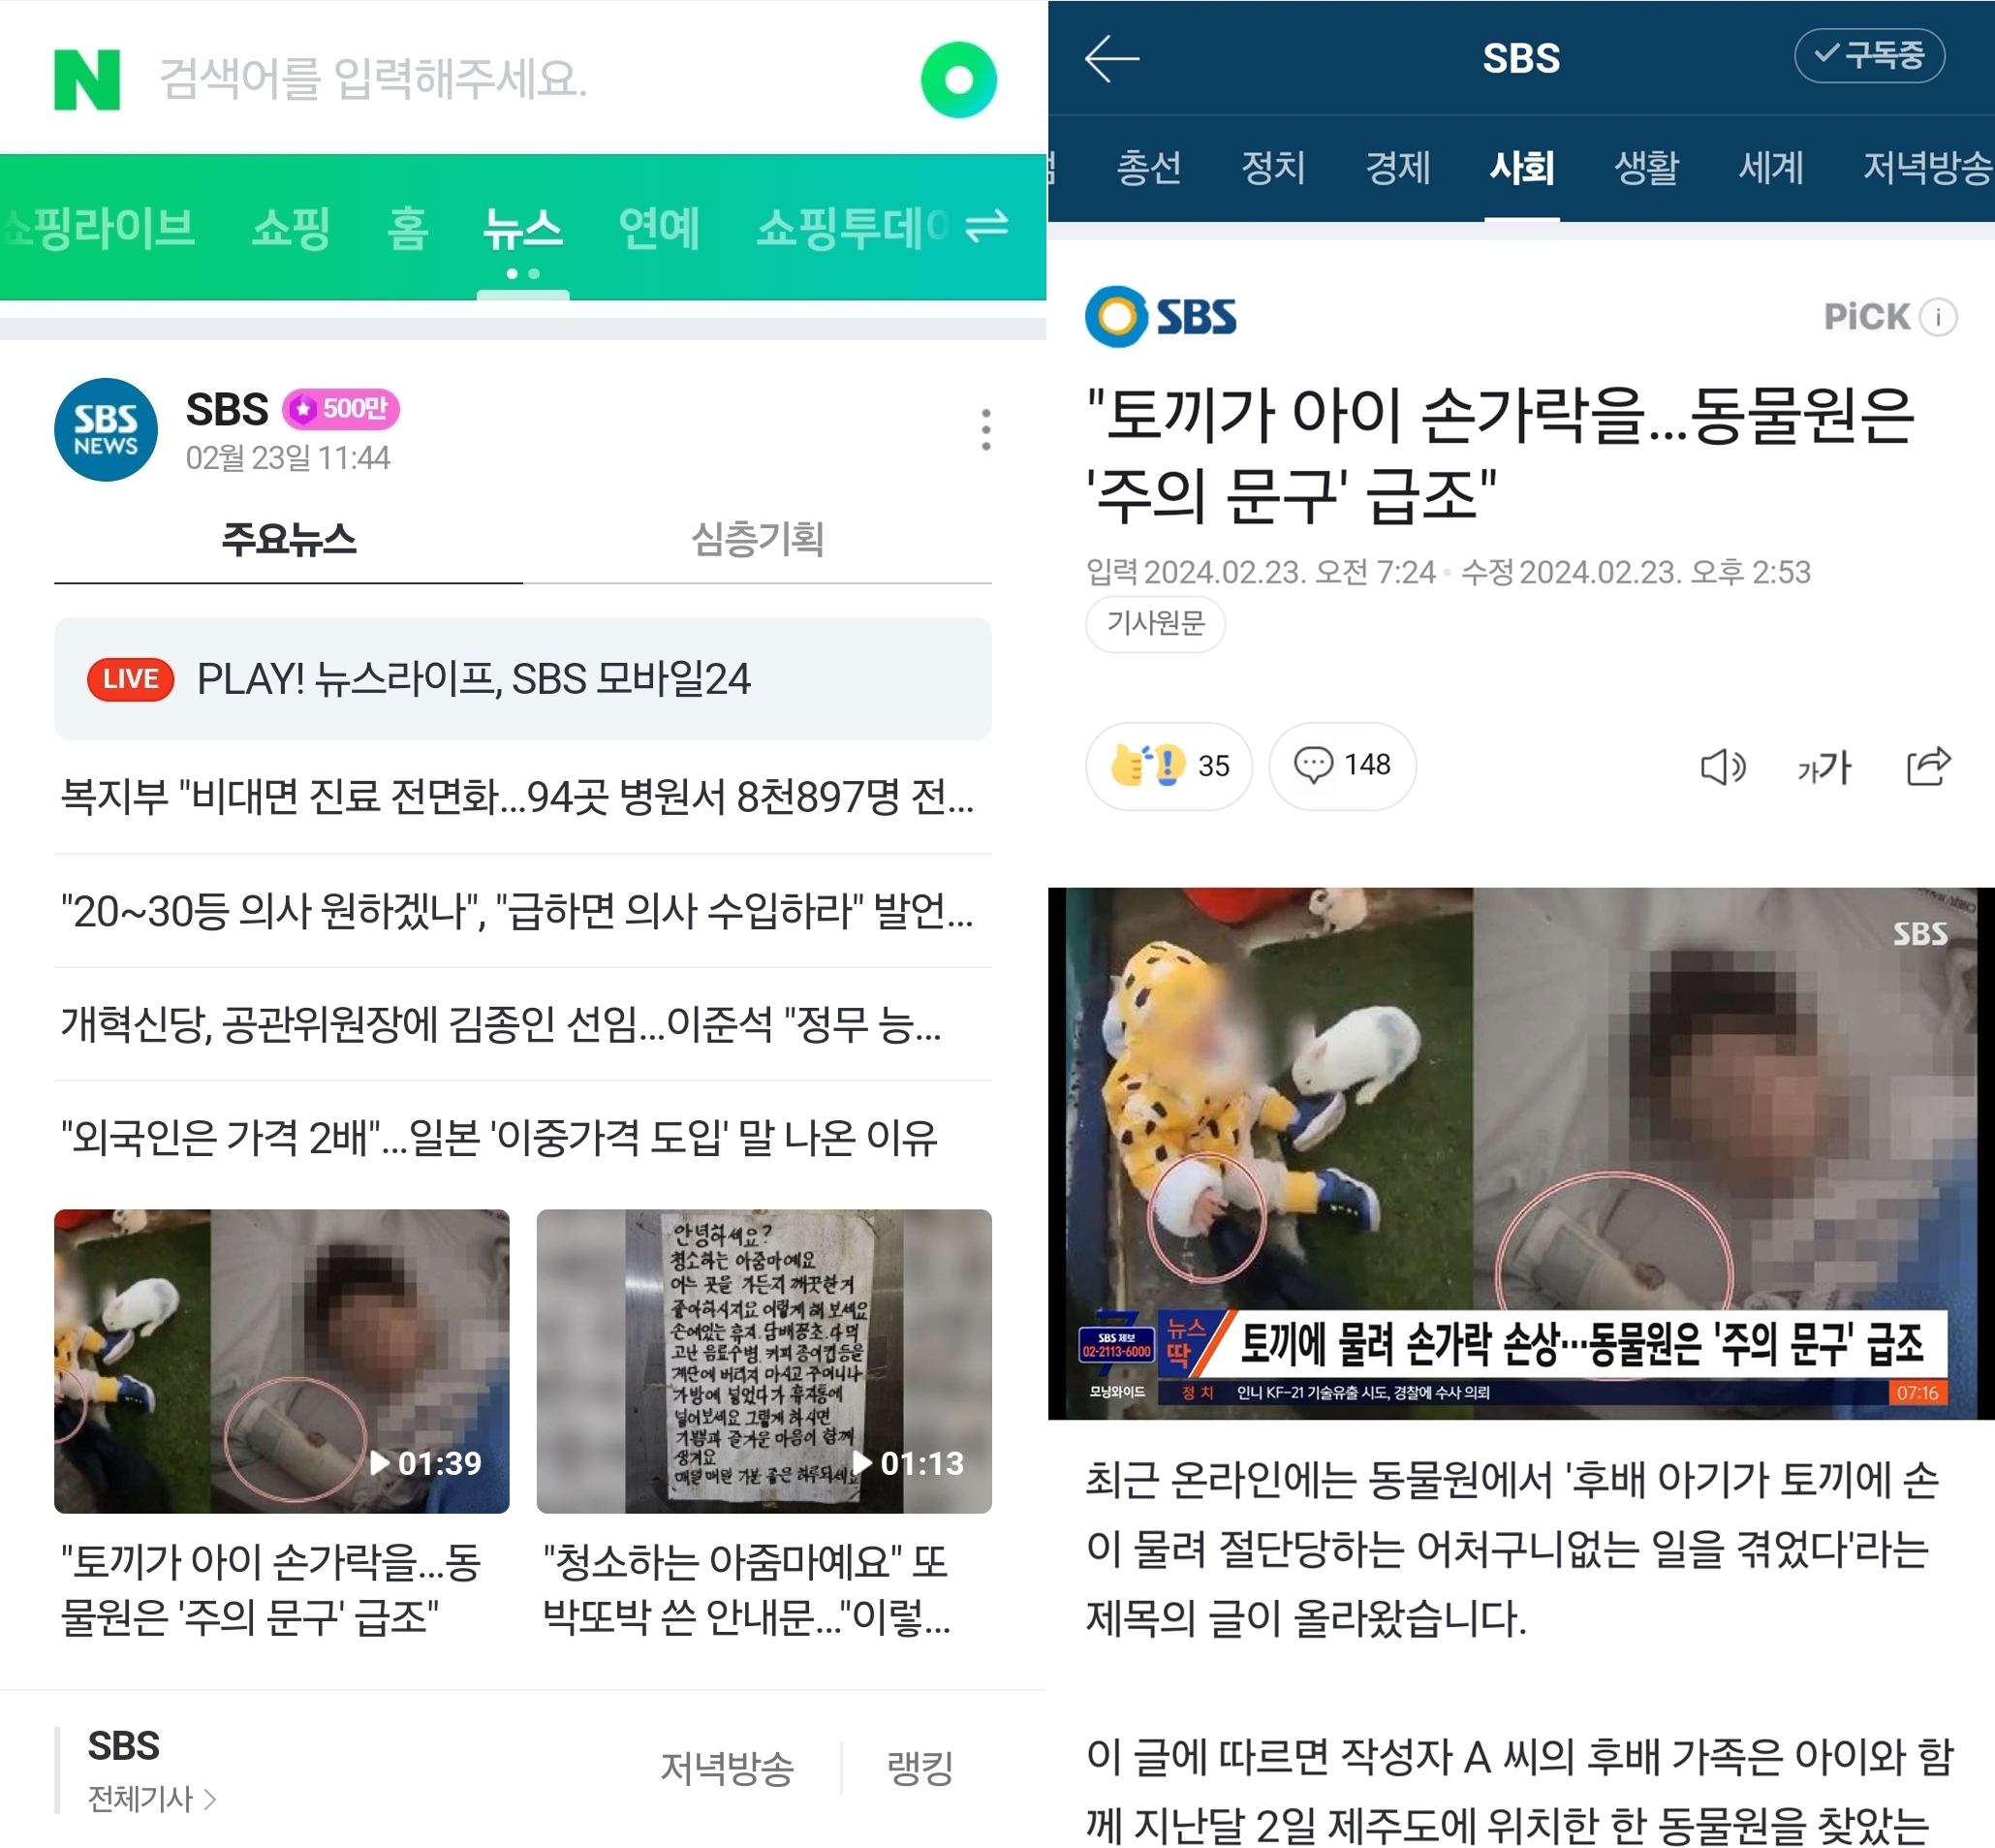 SBS에서 다룬 ‘토끼 물림’ 사고 기사. 지난해 발생한 사건을 ‘지난달 2일’ 발생했다고 기재한 점 등, 최초 오보와 내용이 비슷하다.